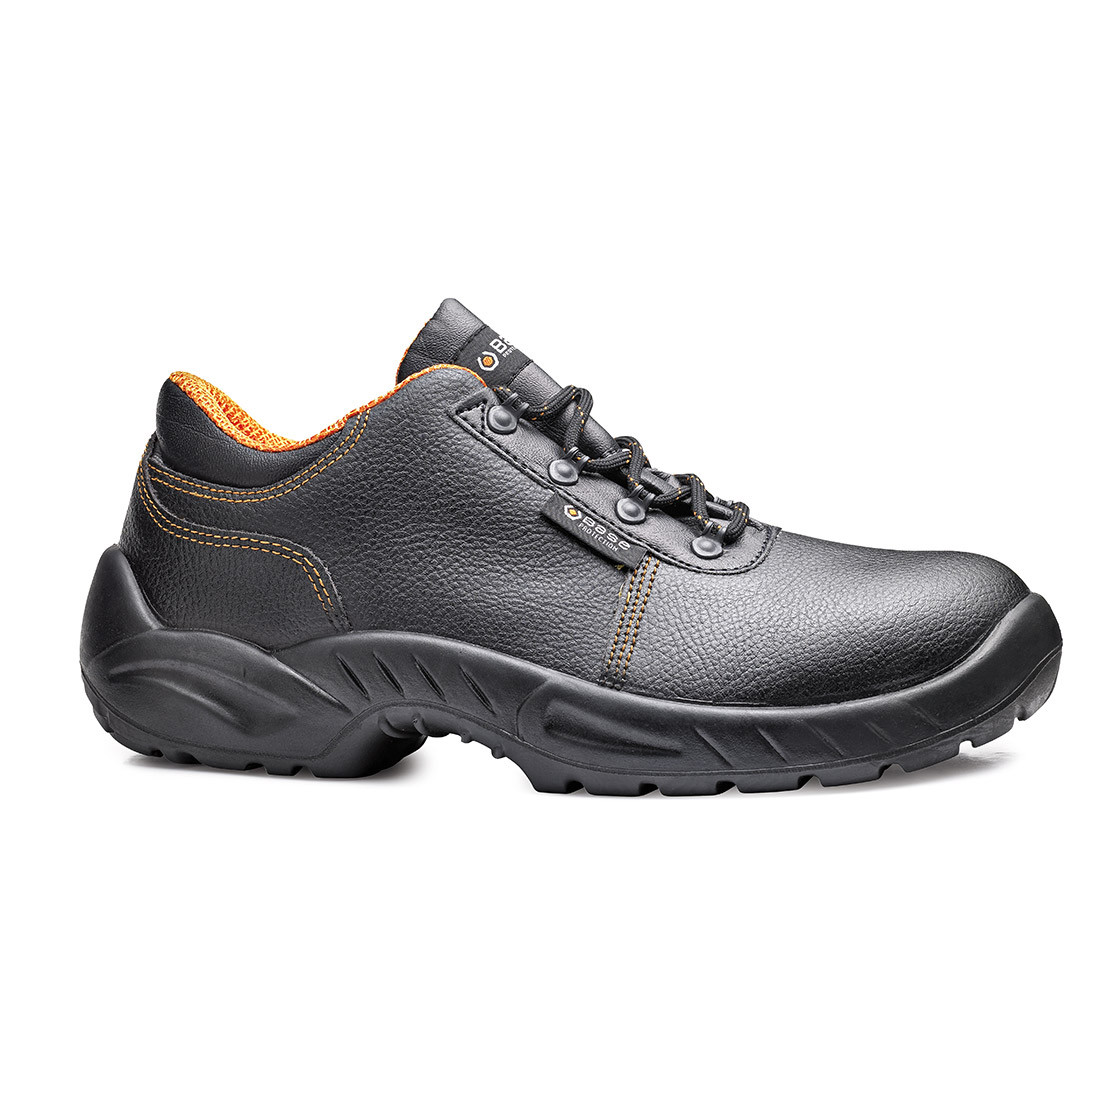 Termini Shoe S3 SRC - Les chaussures de protection